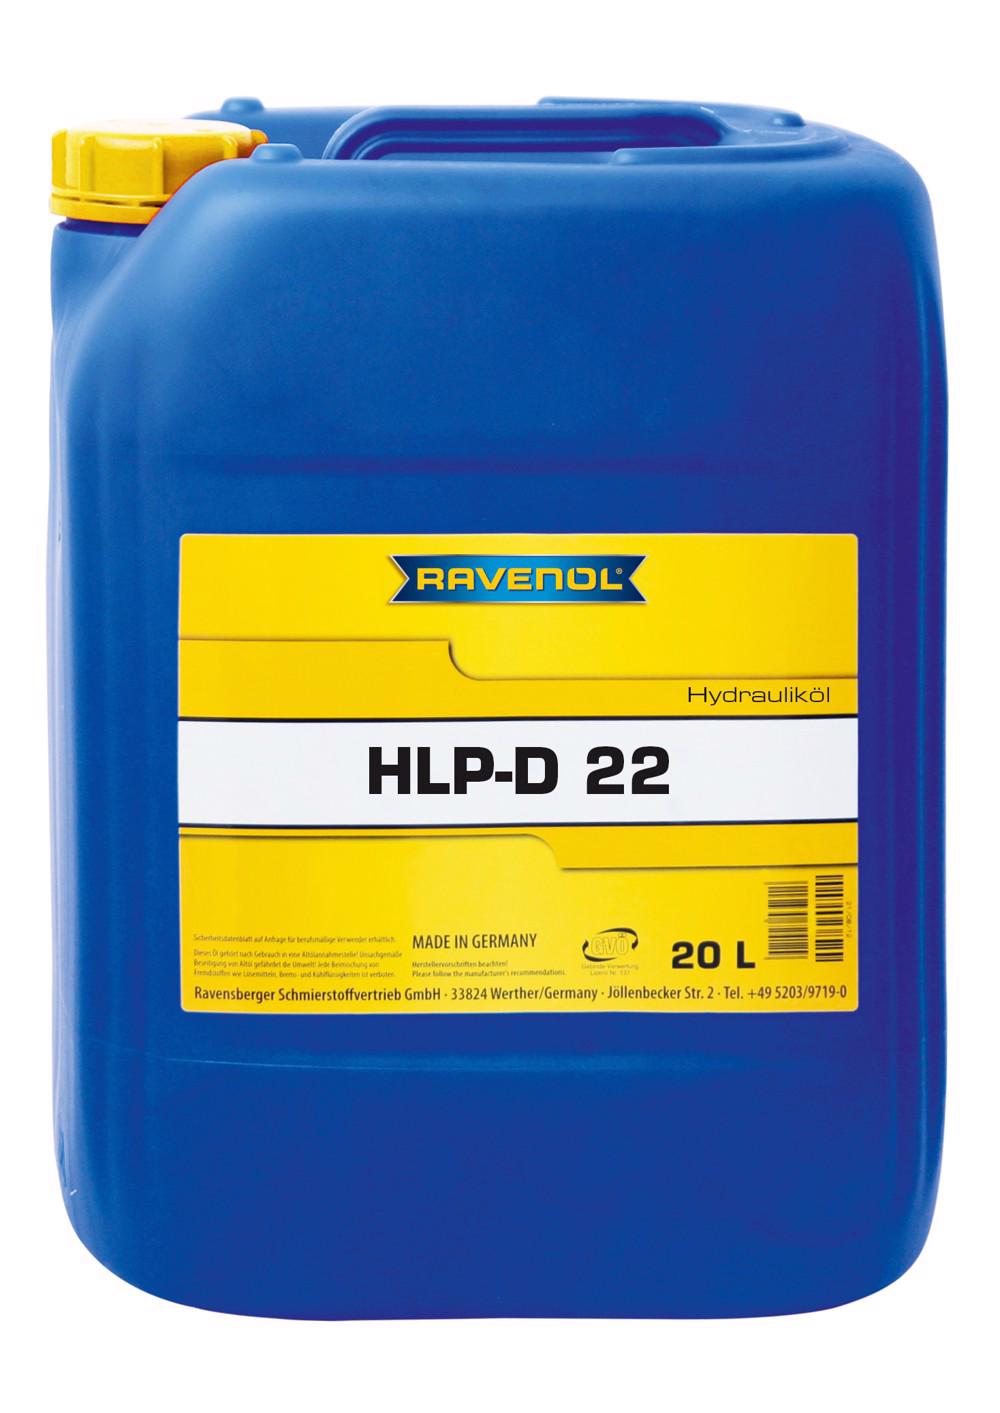 RAVENOL Hydraulikoel HLP-D 22  20 L